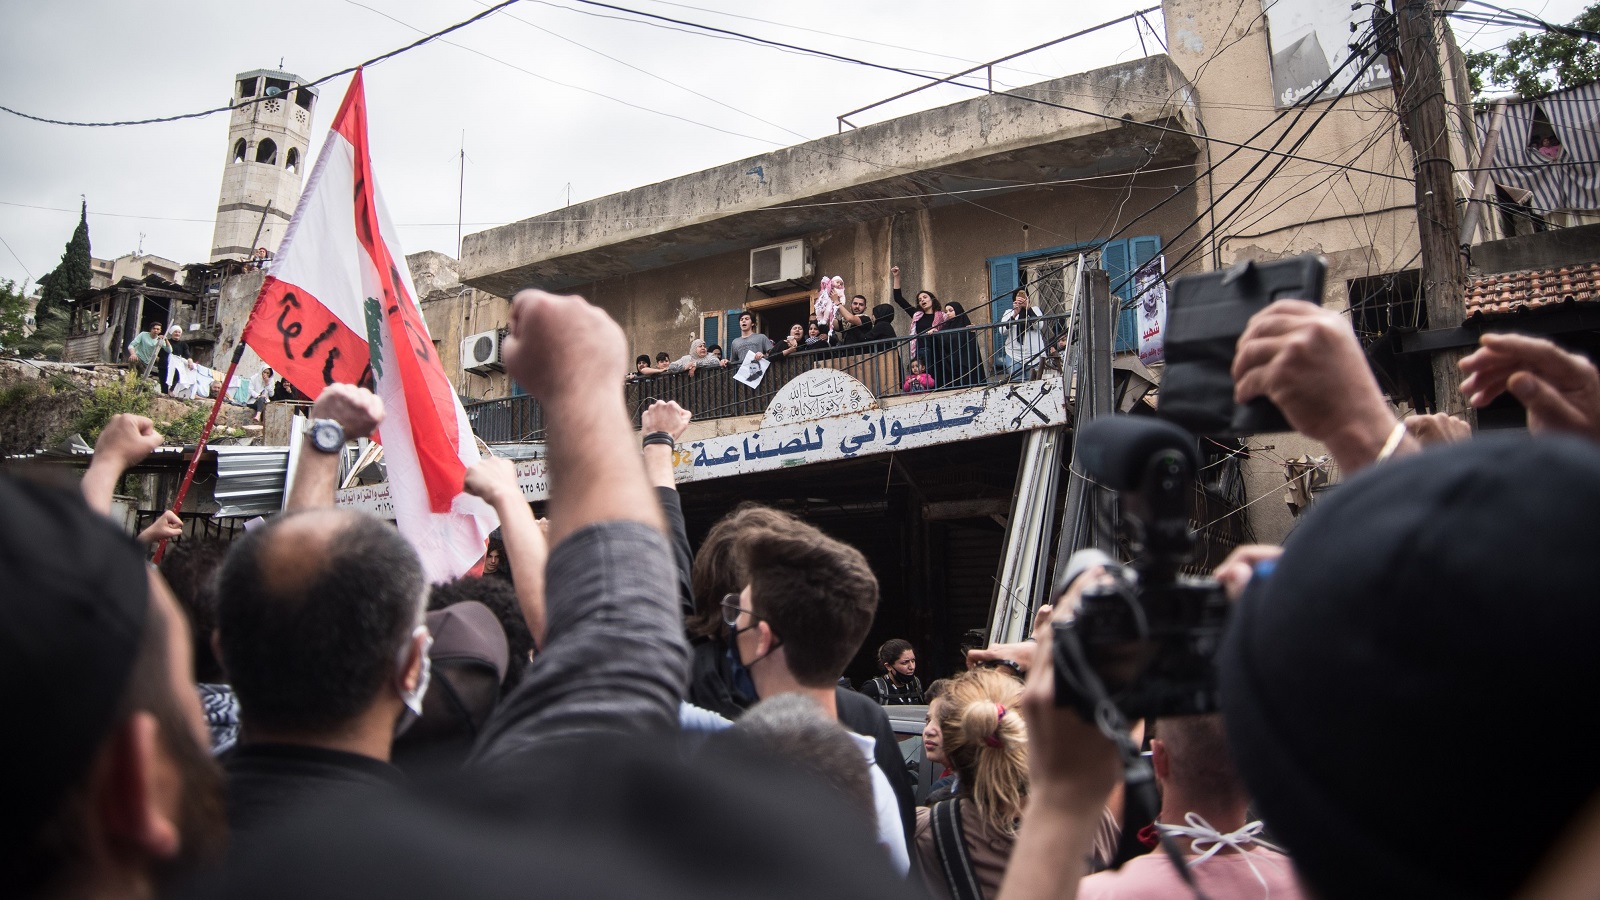 ثوار لبنان يؤمّون طرابلس: دموع وصرخات تحت شرفة الشهيد